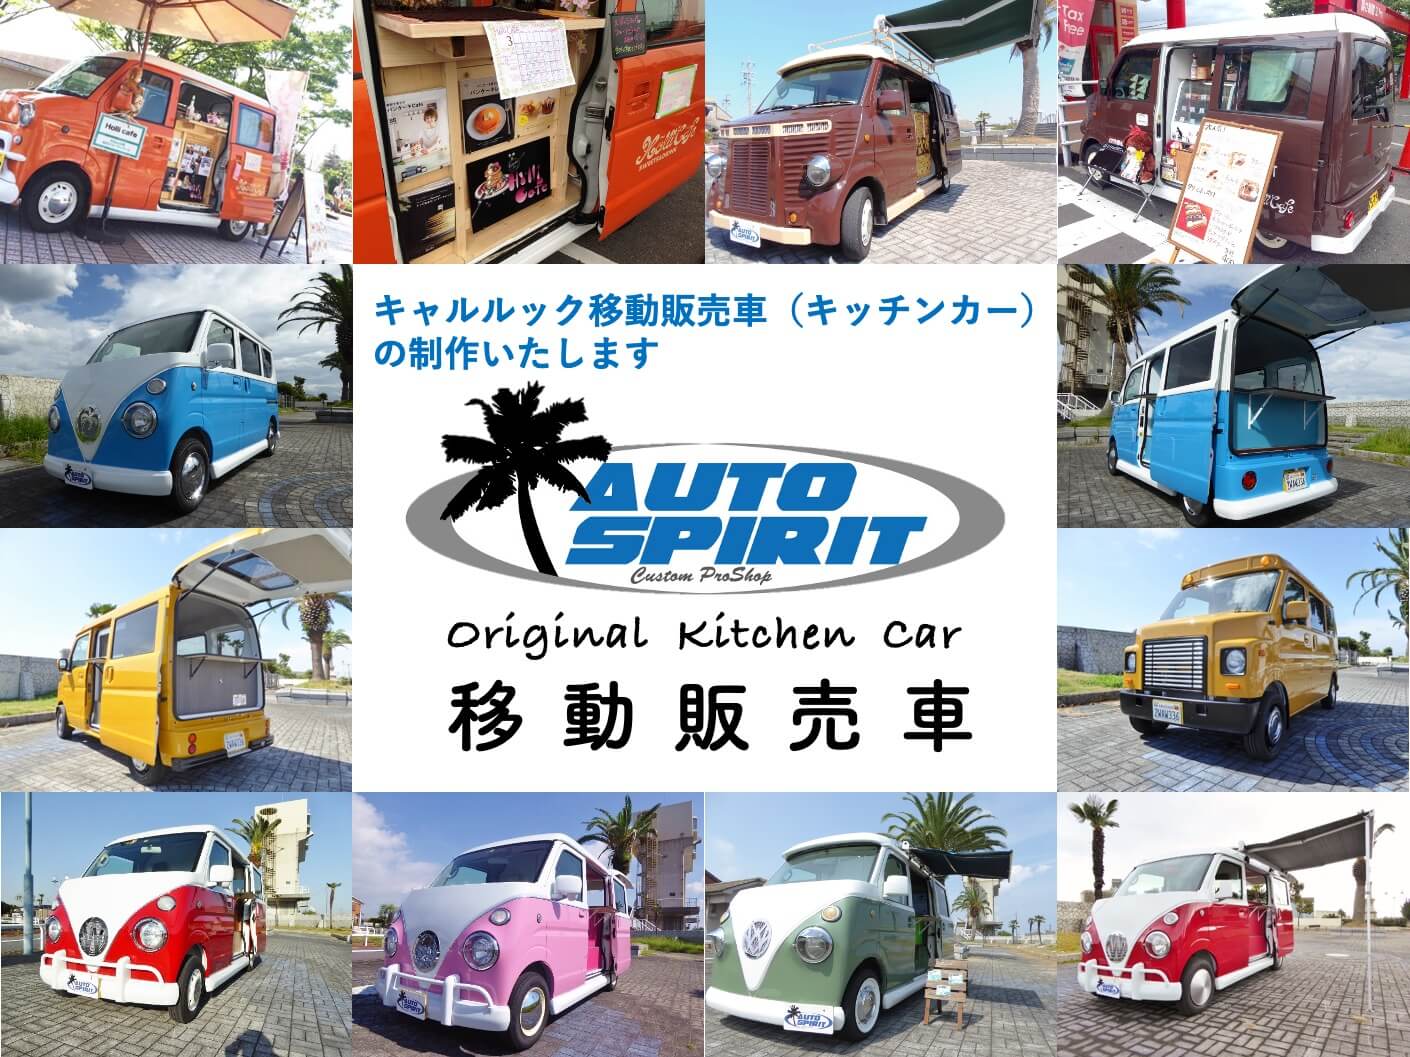 三重県で移動販売車 キッチンカー をオーダー制作ならオートスピリットにお任せください